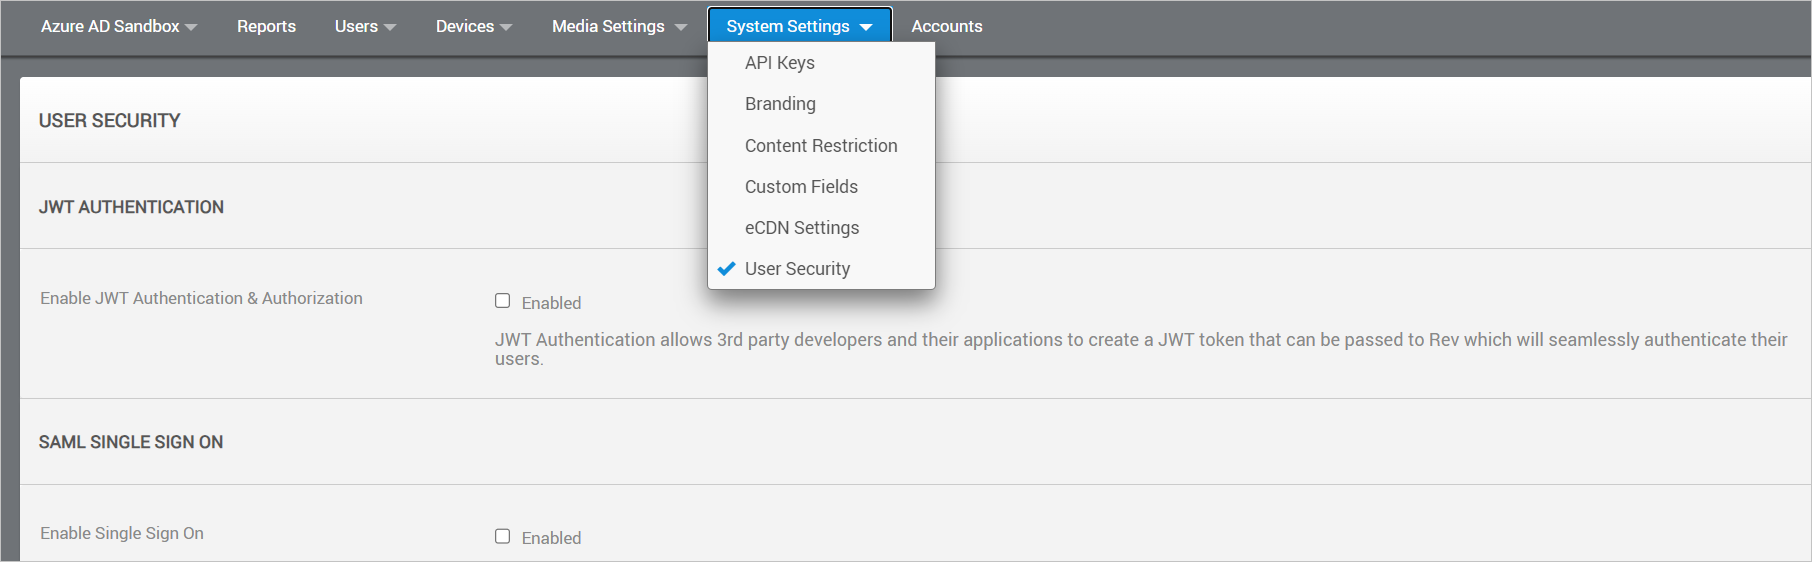 Captura de pantalla de la configuración de seguridad del usuario de Vbrick Rev.